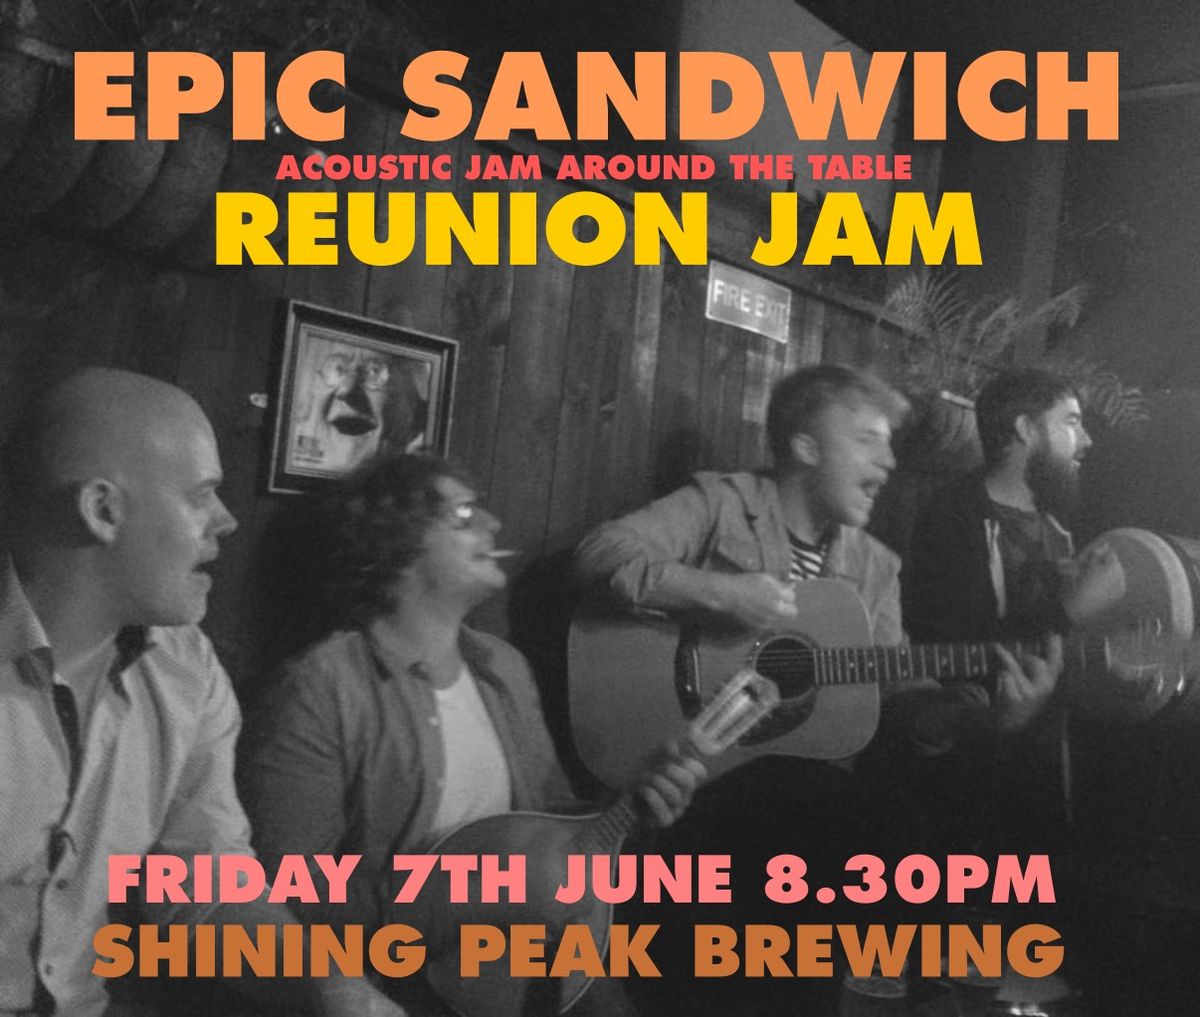 Epic Sandwich Reunion Jam